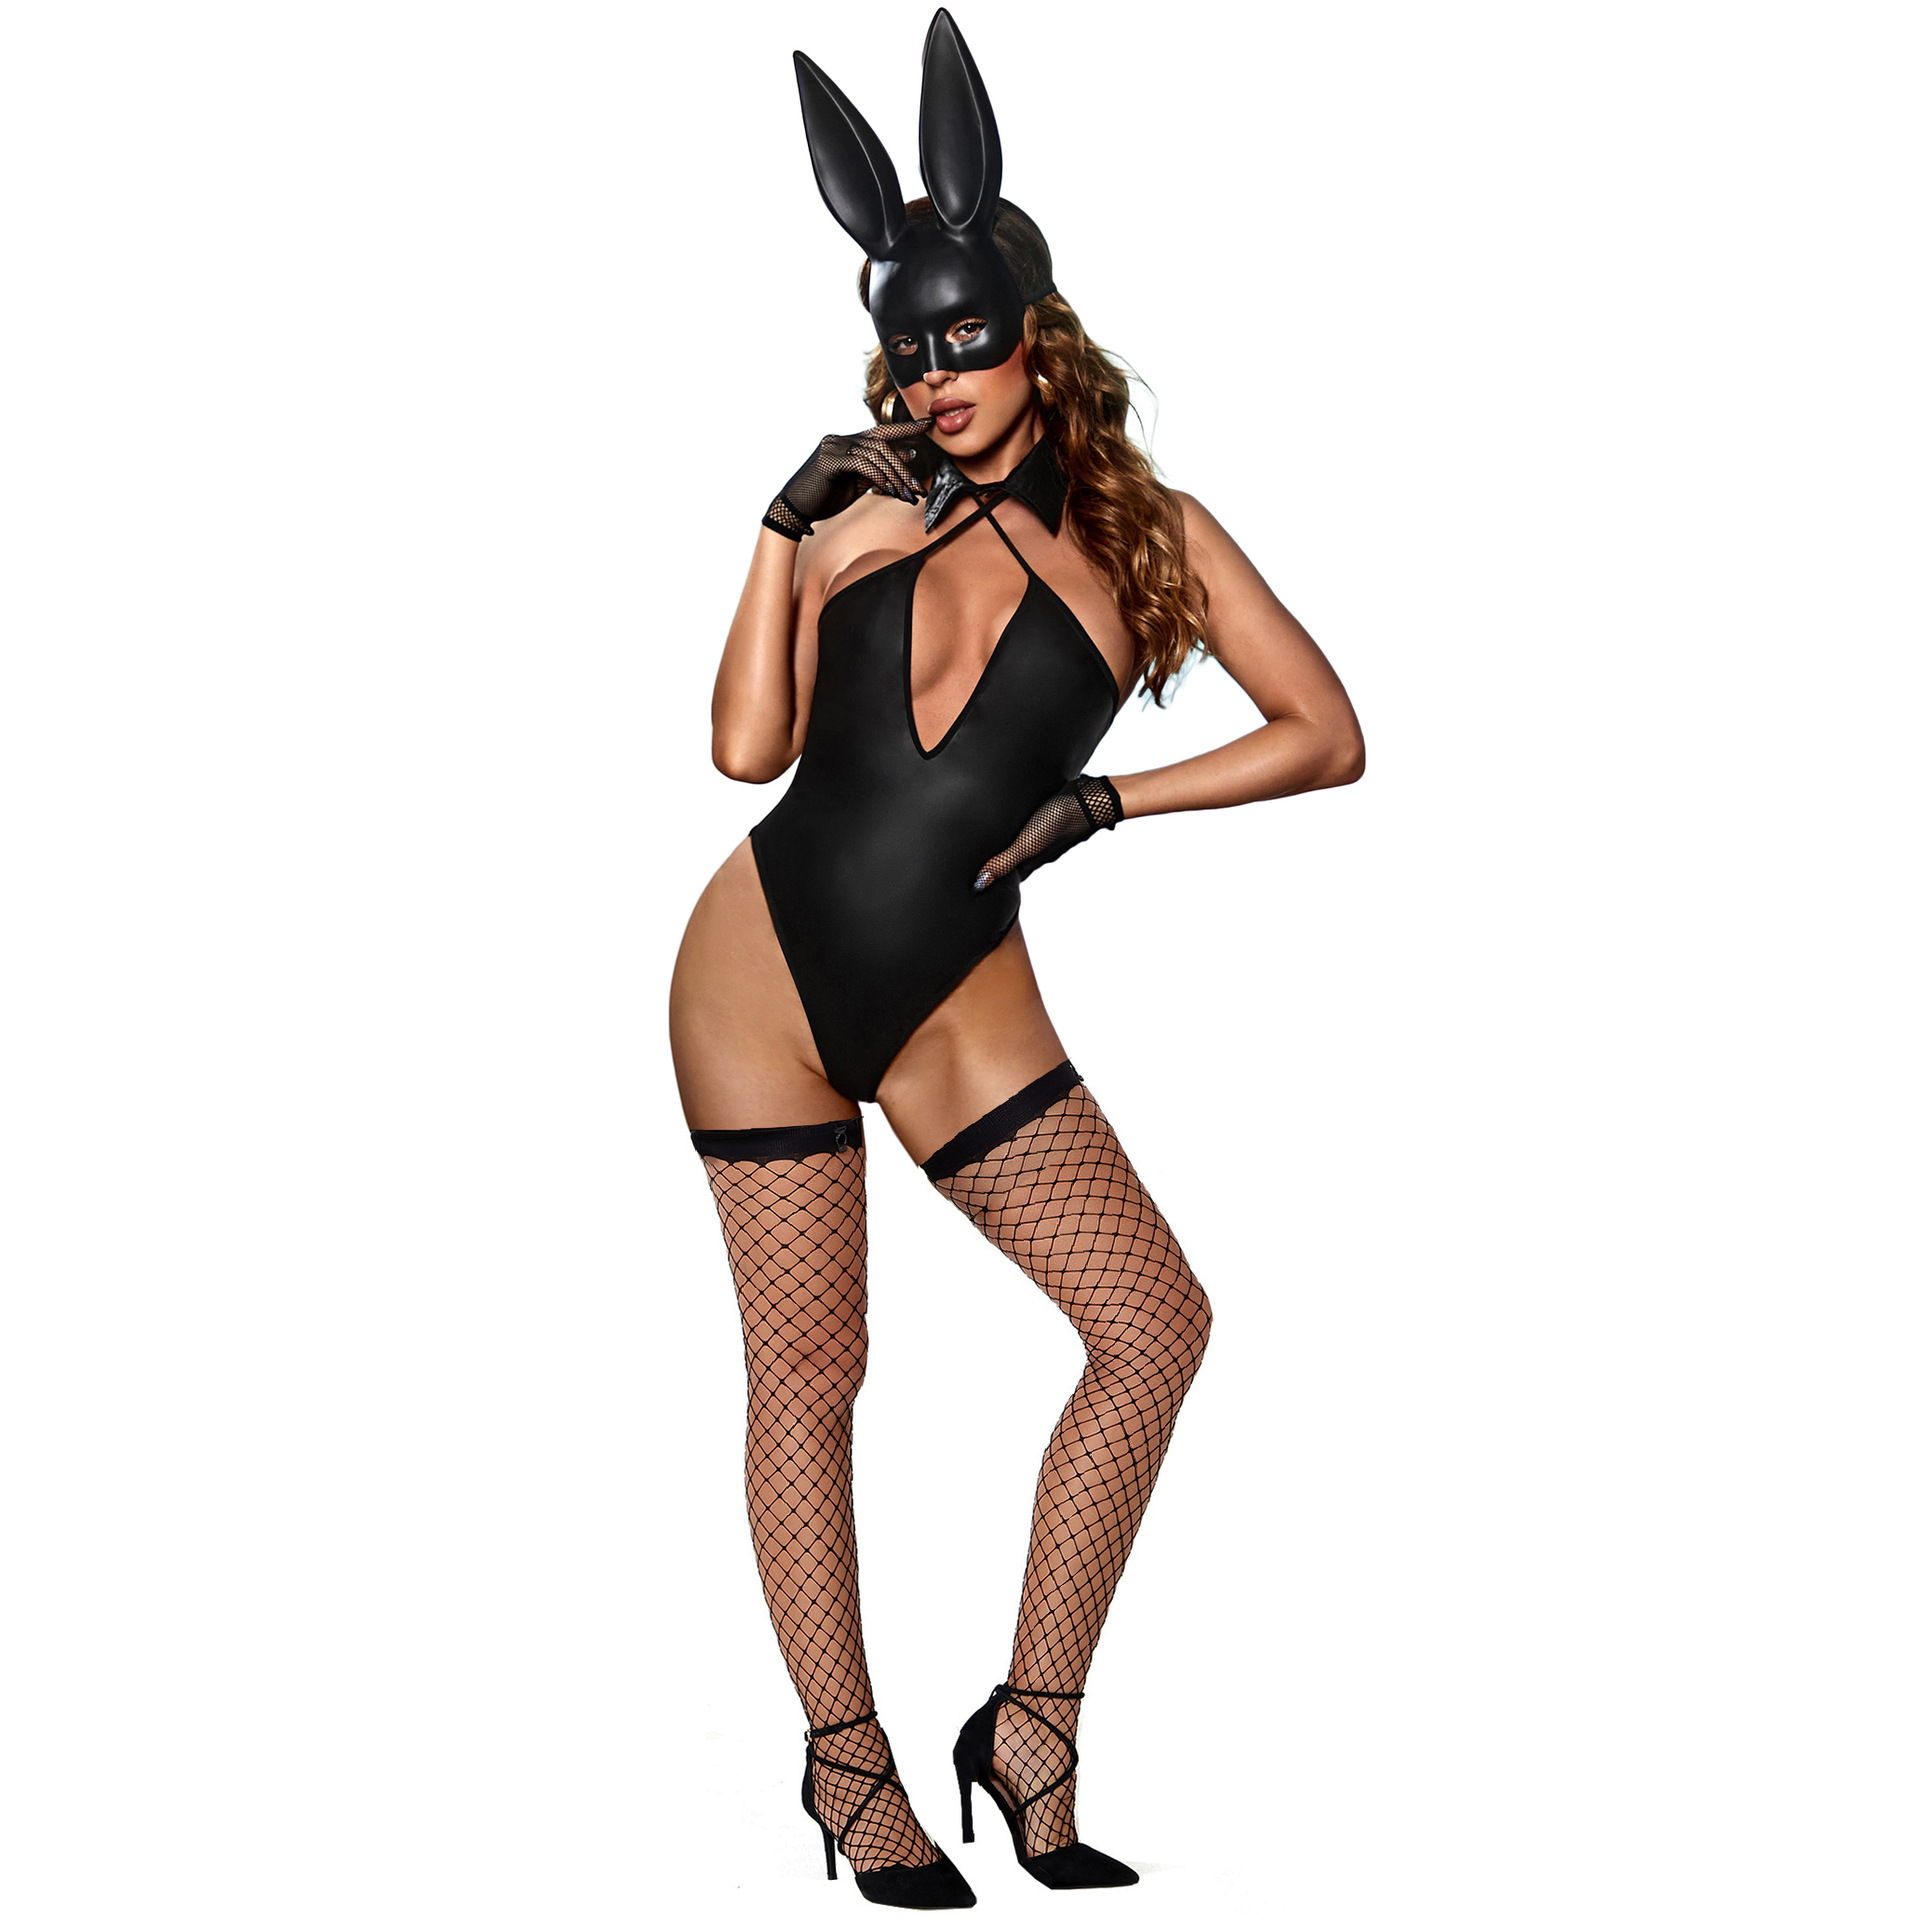 S-L 性感兔女郎 服装 情趣内衣 连体兔子装 角色扮演COS游戏制服